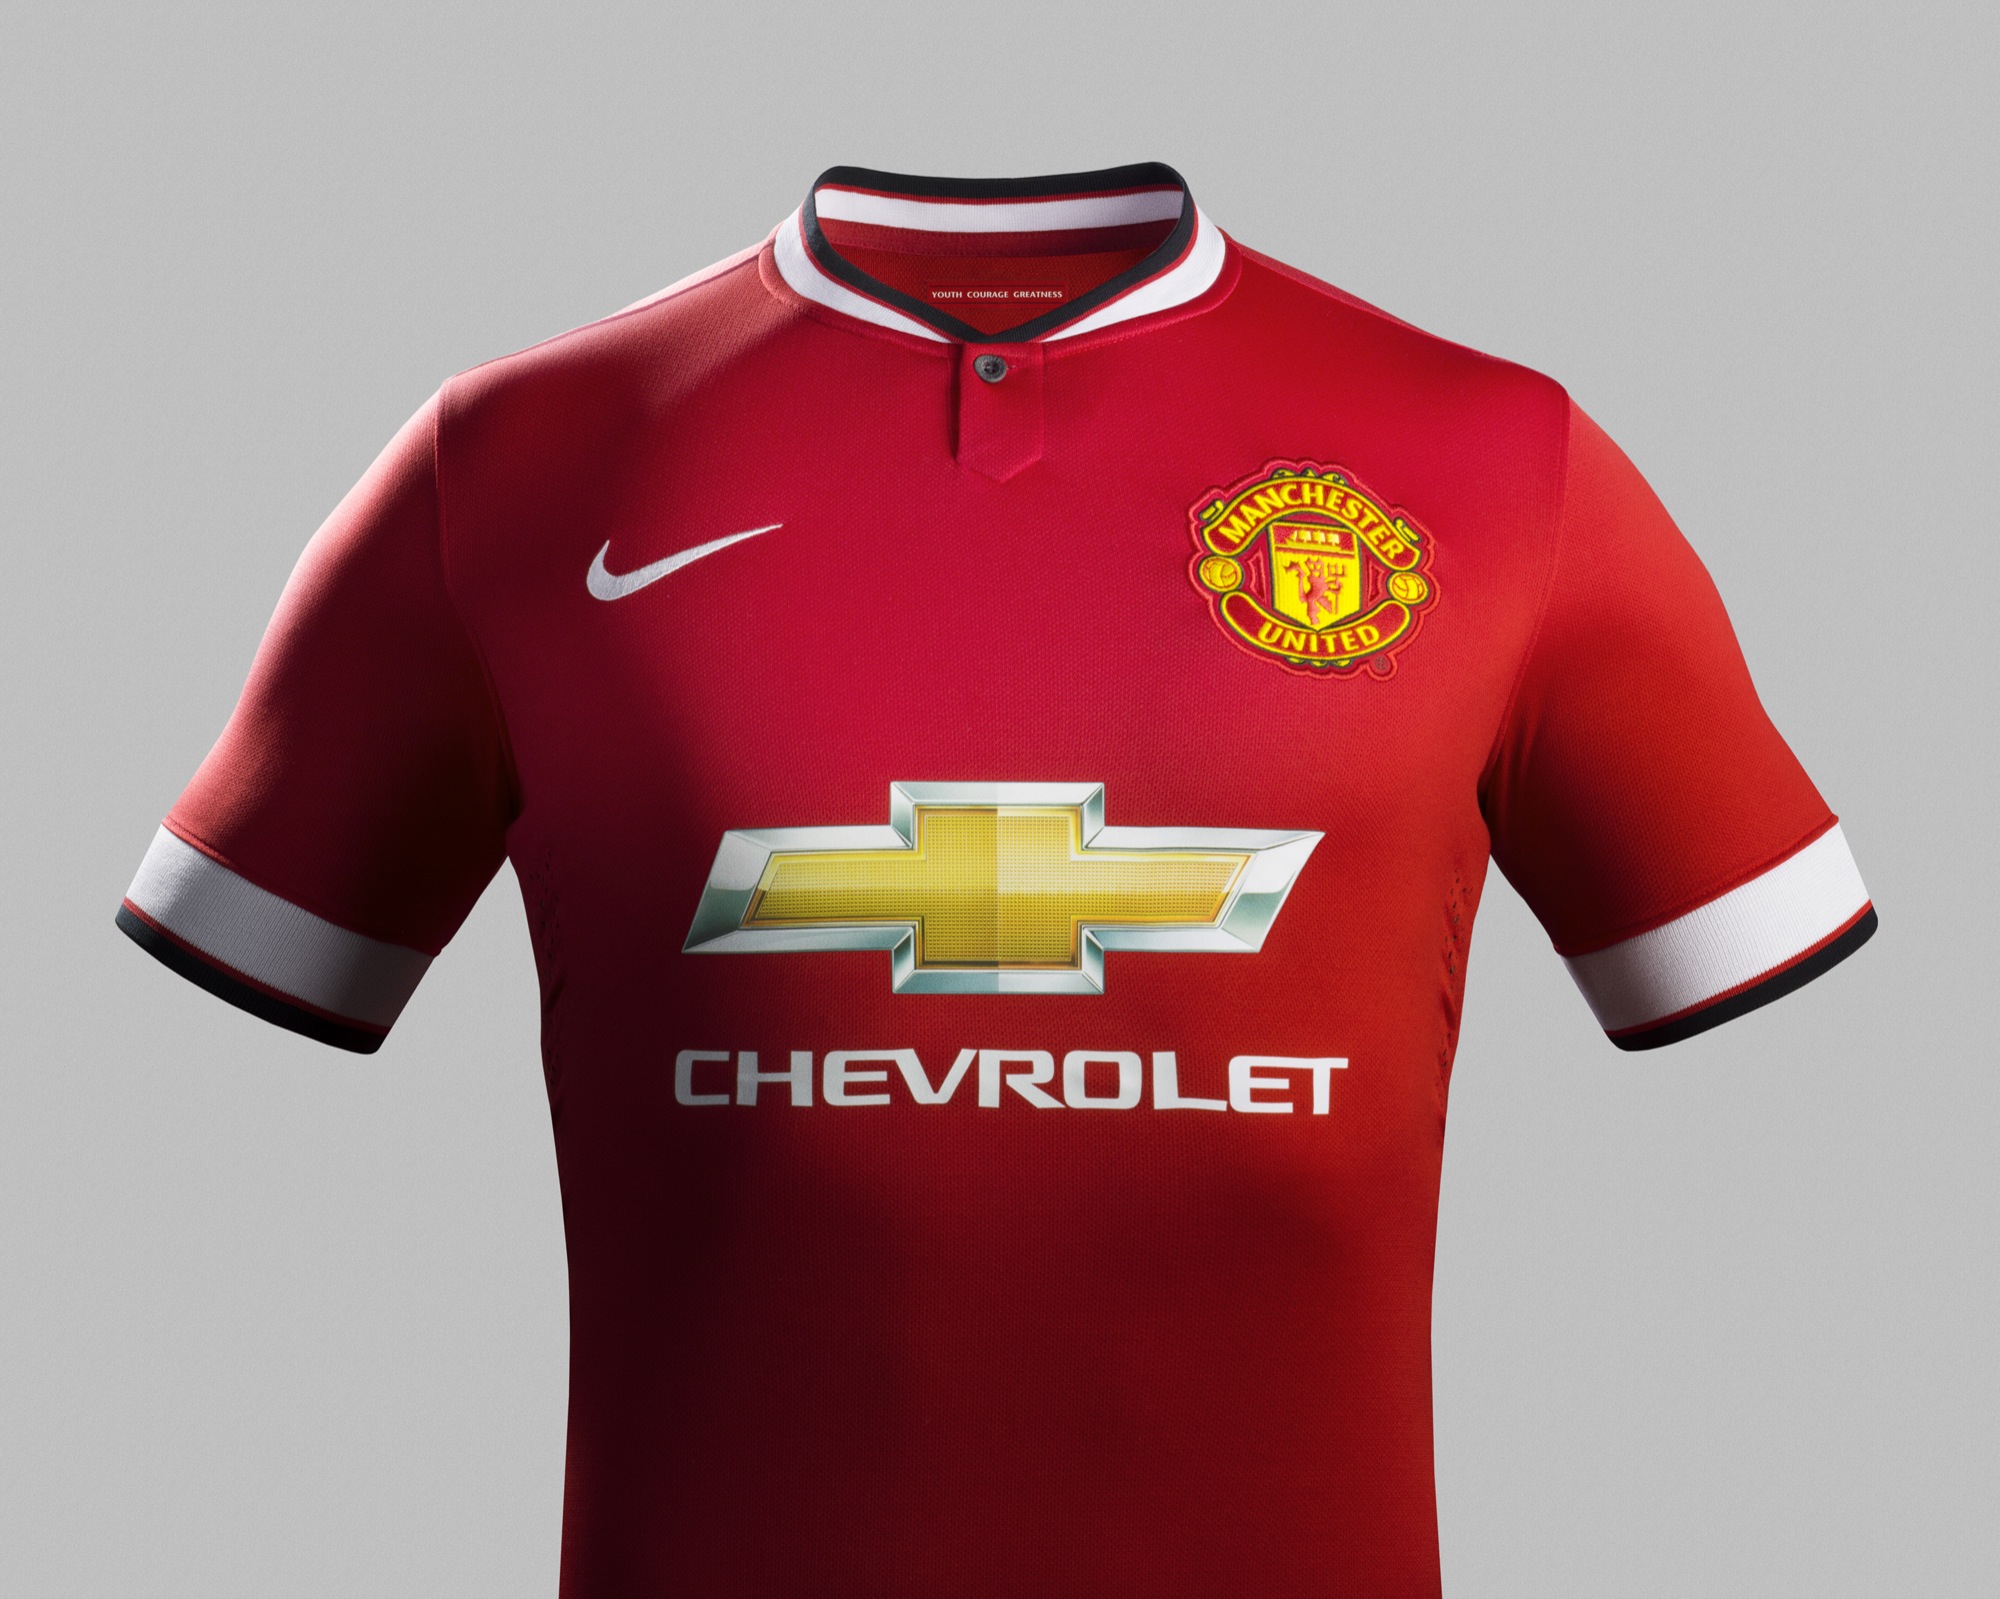 Nouveau maillot manchester united 2014-2015